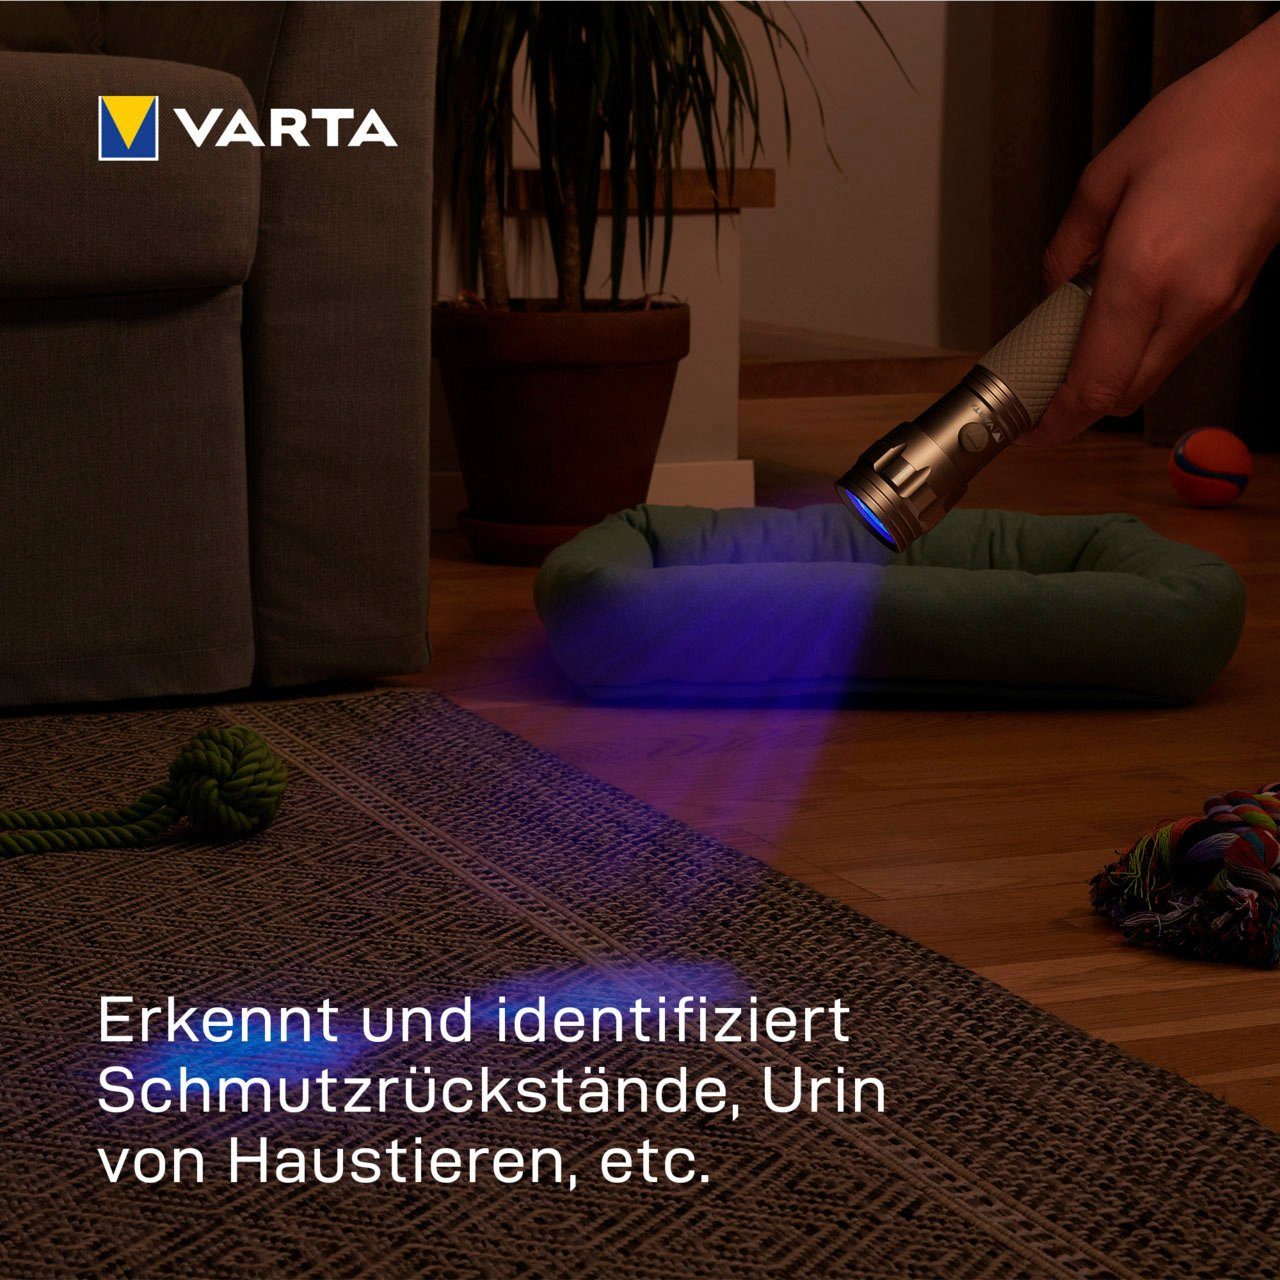 VARTA Taschenlampe Schwarzlicht mit sichtbar (Set), macht UV Licht Leuchte Hygienehilfe Unsichtbares